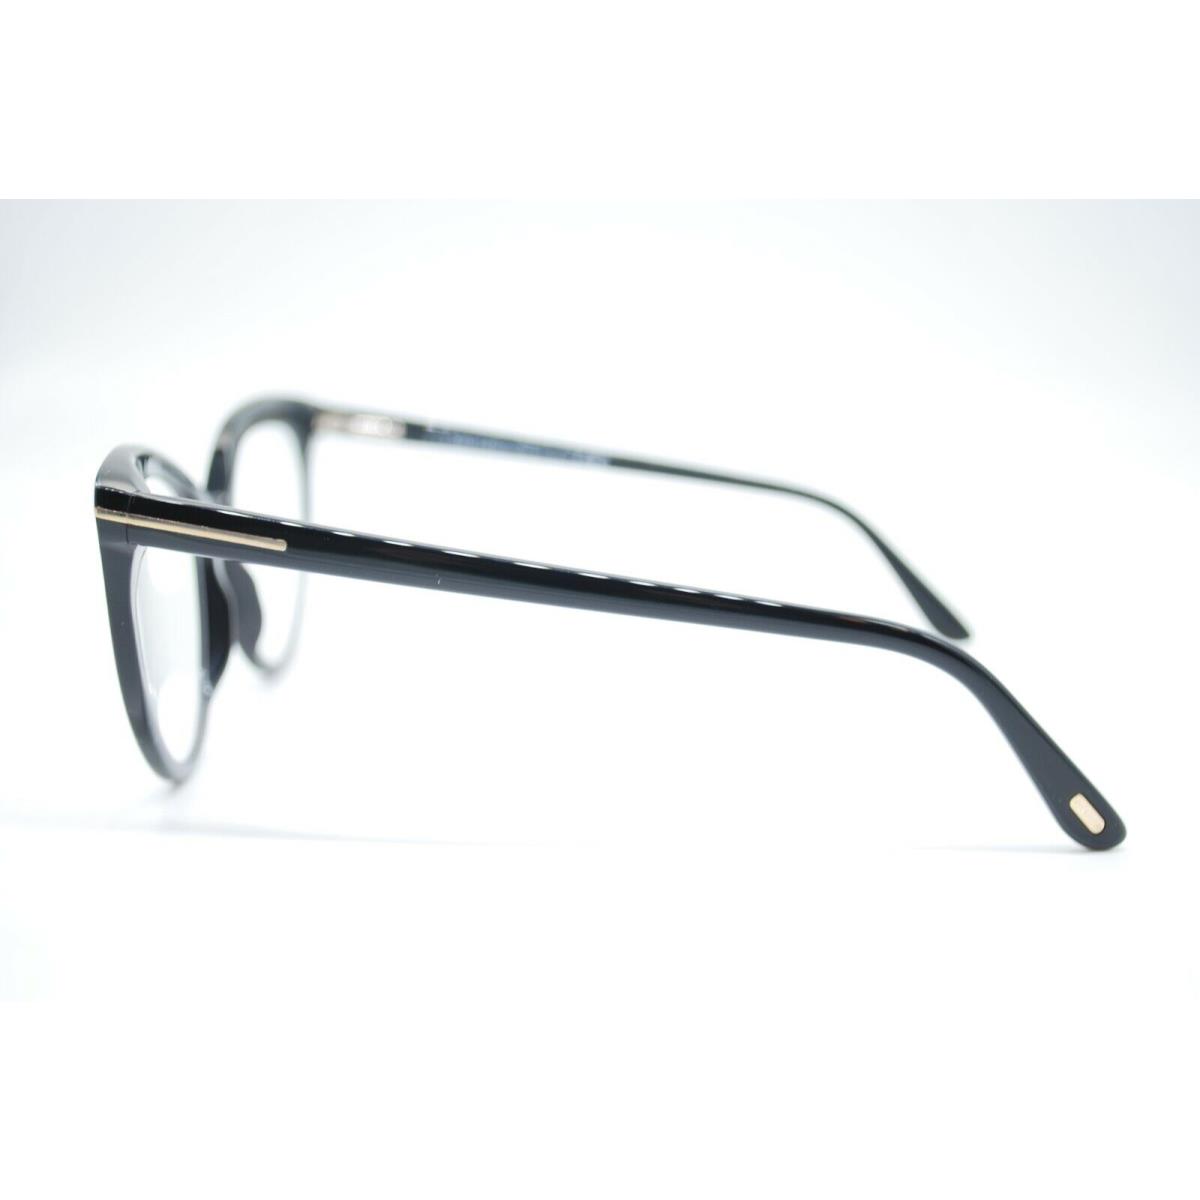 Tom Ford eyeglasses  - Black Frame 2